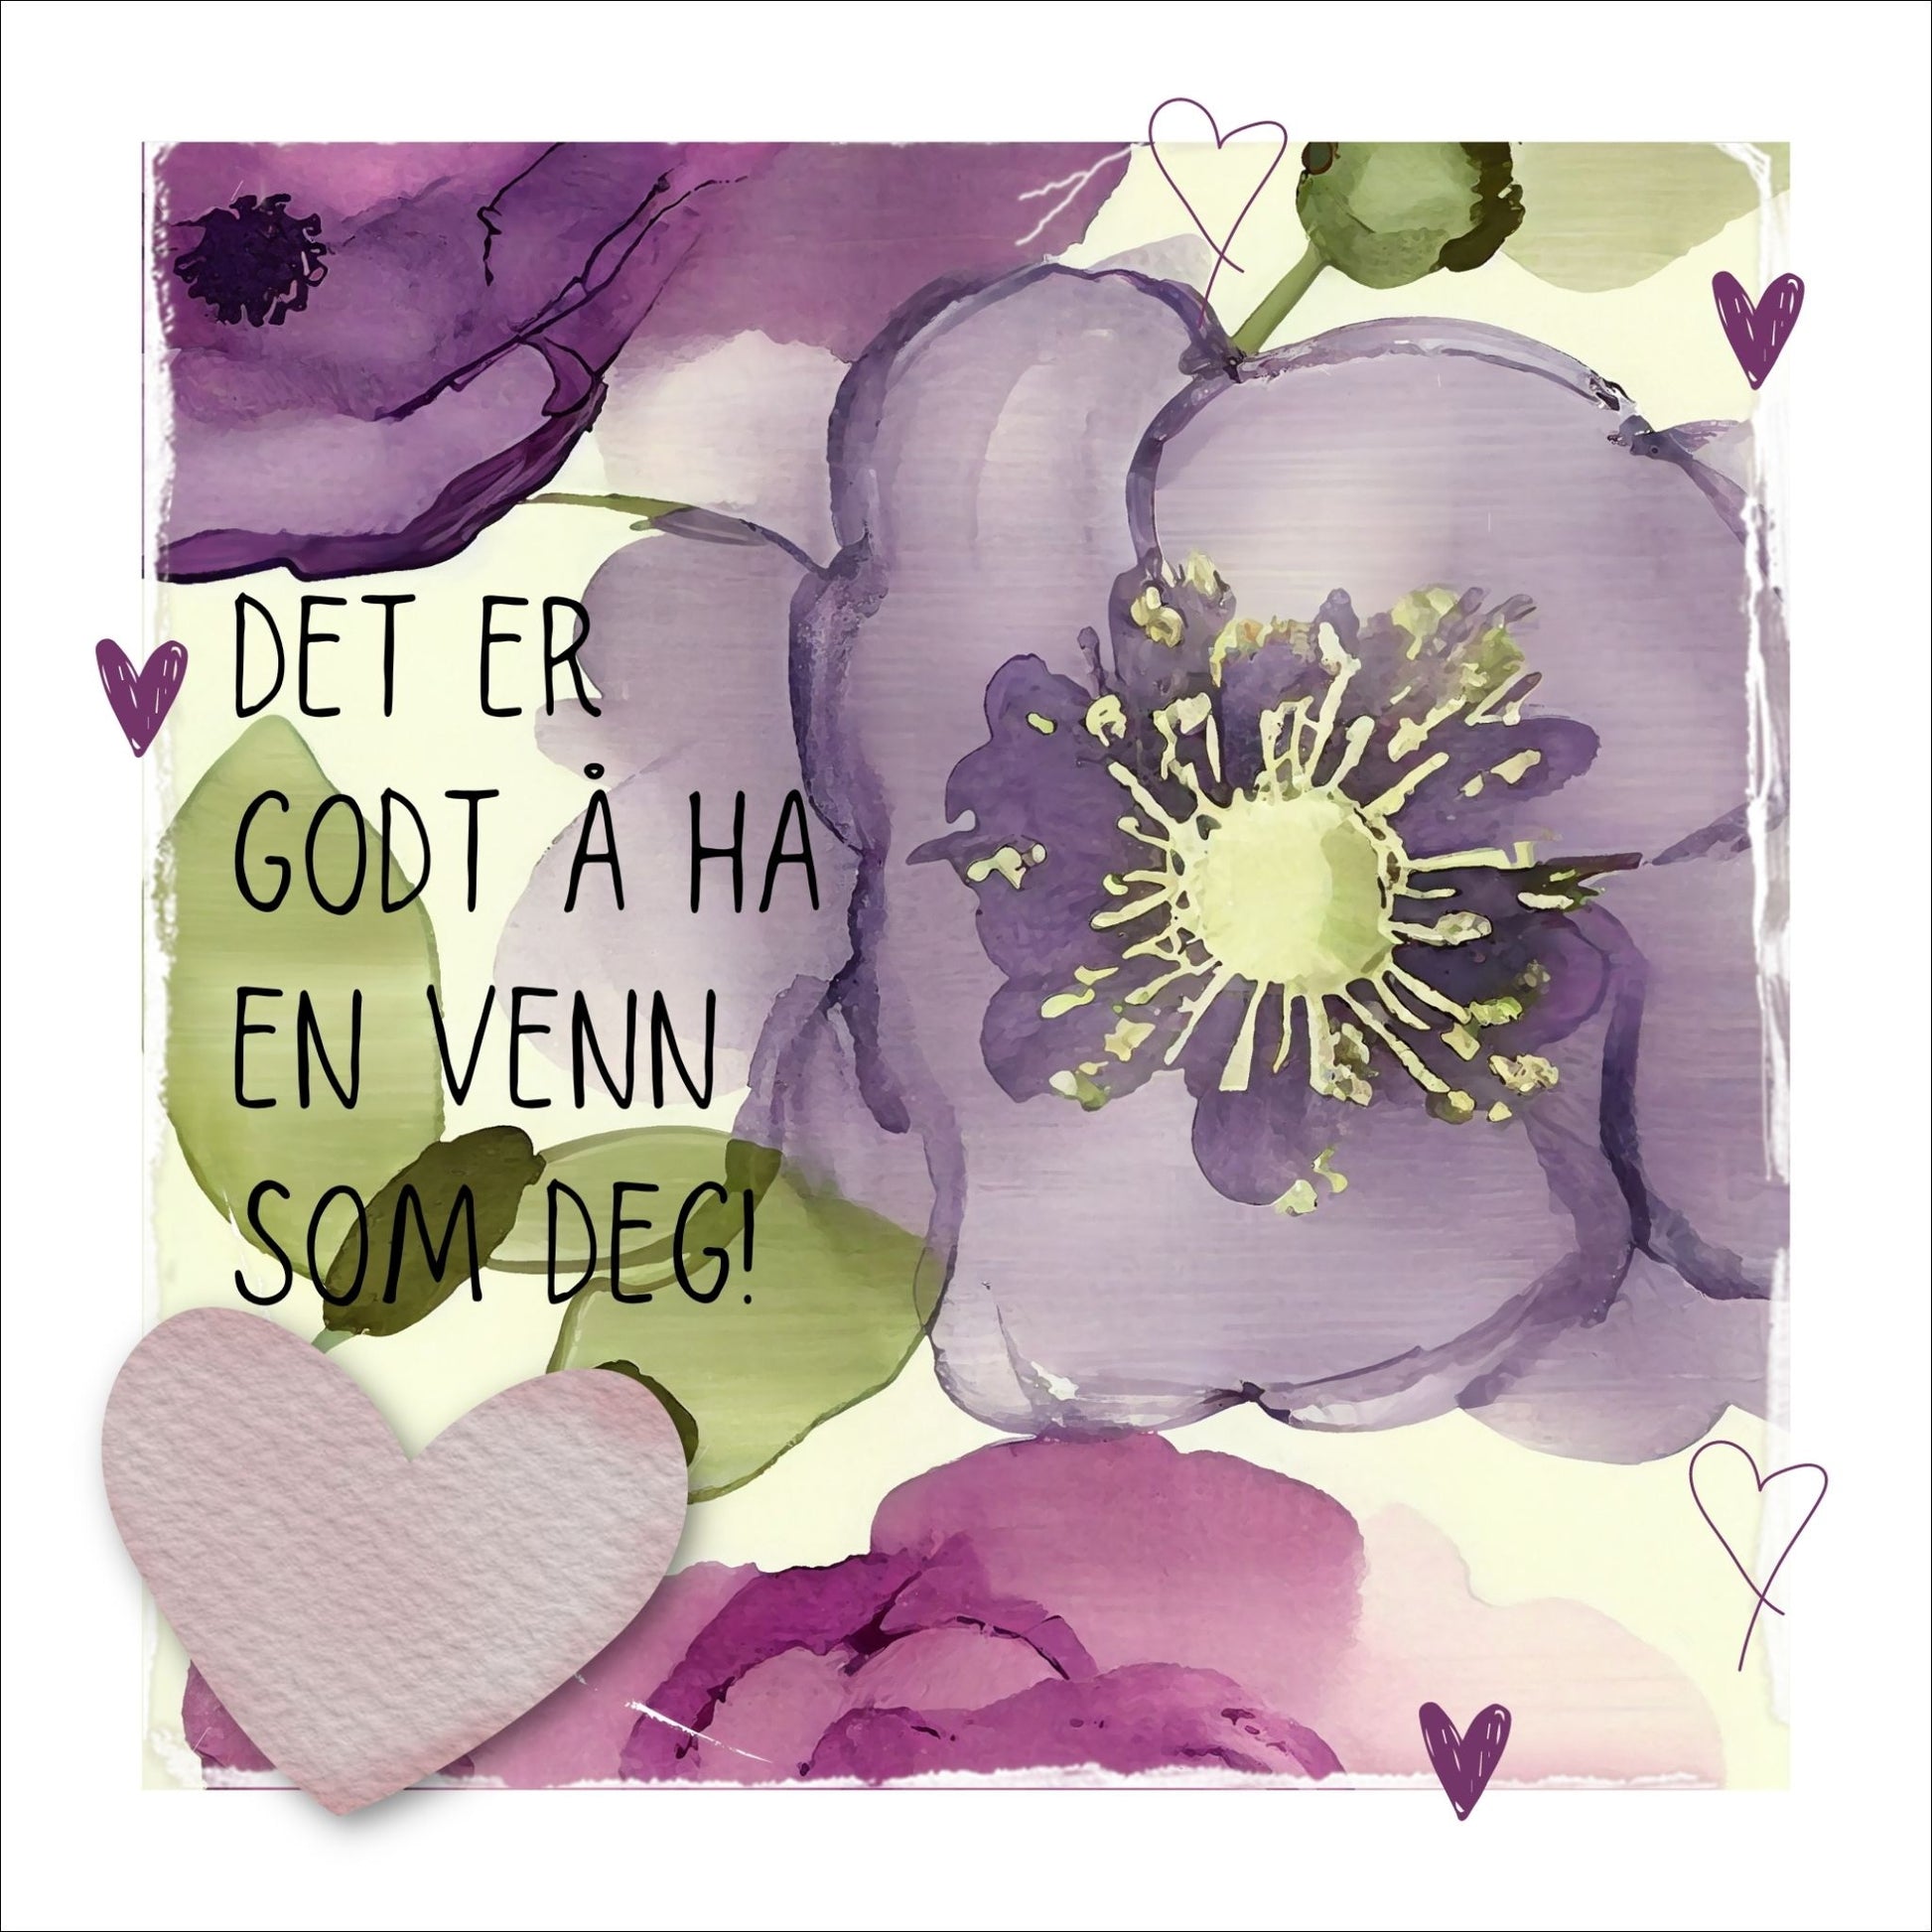 Go'ord plakat med teksten "Det er godt å ha en venn som deg" på en bakgrunn med blomstermotiv i lilla, burgunder og grønt. Hvit kant på 1,5 cm. som fremhever og gir bildet dybde.